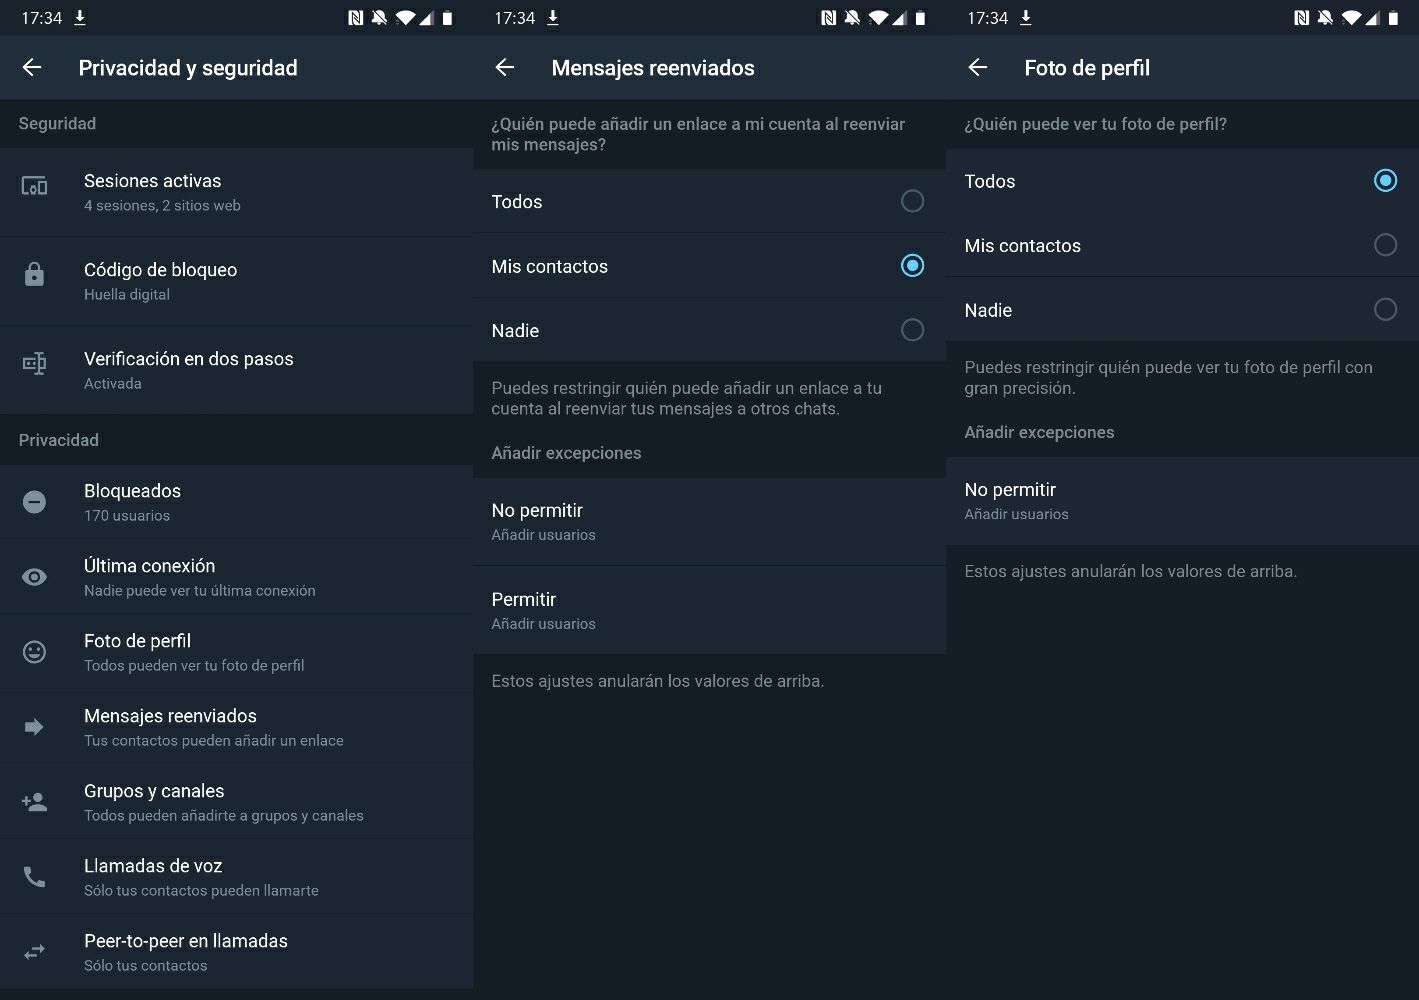 Nuevas funciones de privacidad en Telegram X